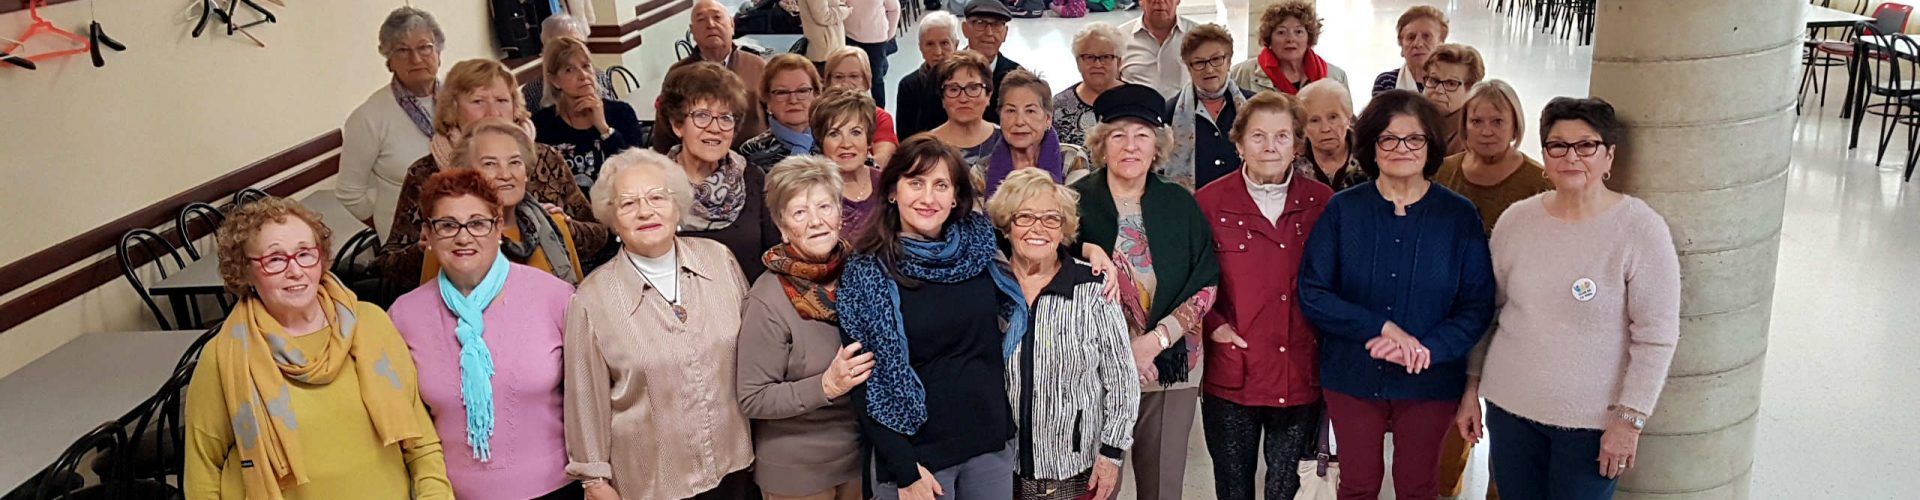 Dos años de ‘El Club de la Vida’ de Vinaròs y ya con más de 400 participantes